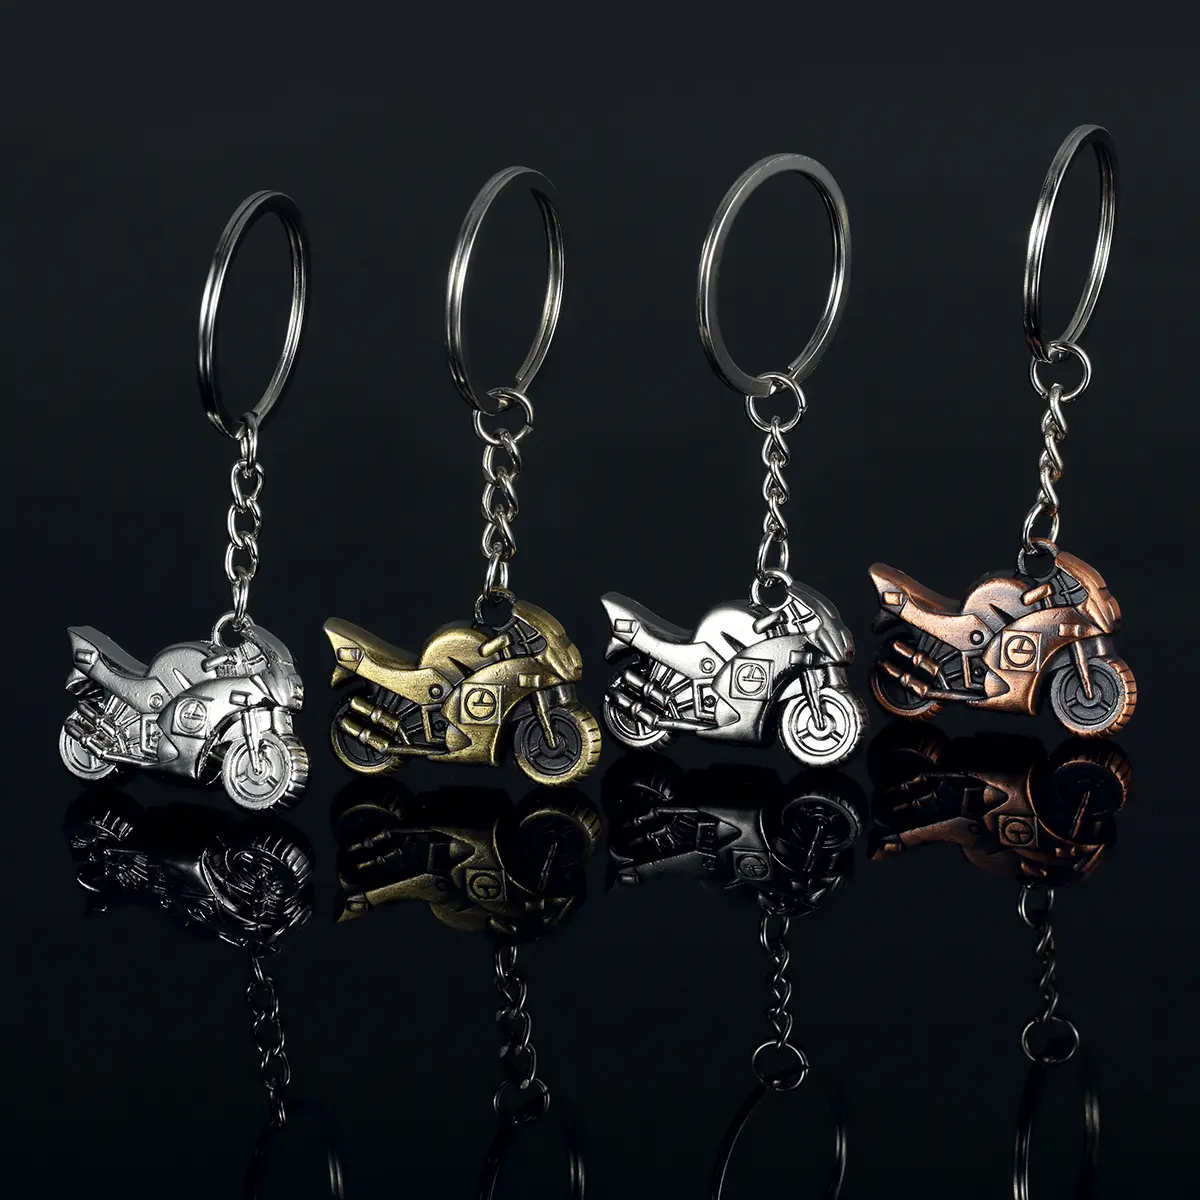 오토바이 모양 열쇠 고리 3D 모터 자전거 금속 열쇠 고리 판촉 창조적 인 선물 합금 열쇠 고리 슈퍼 쿨 오토바이 열쇠 고리